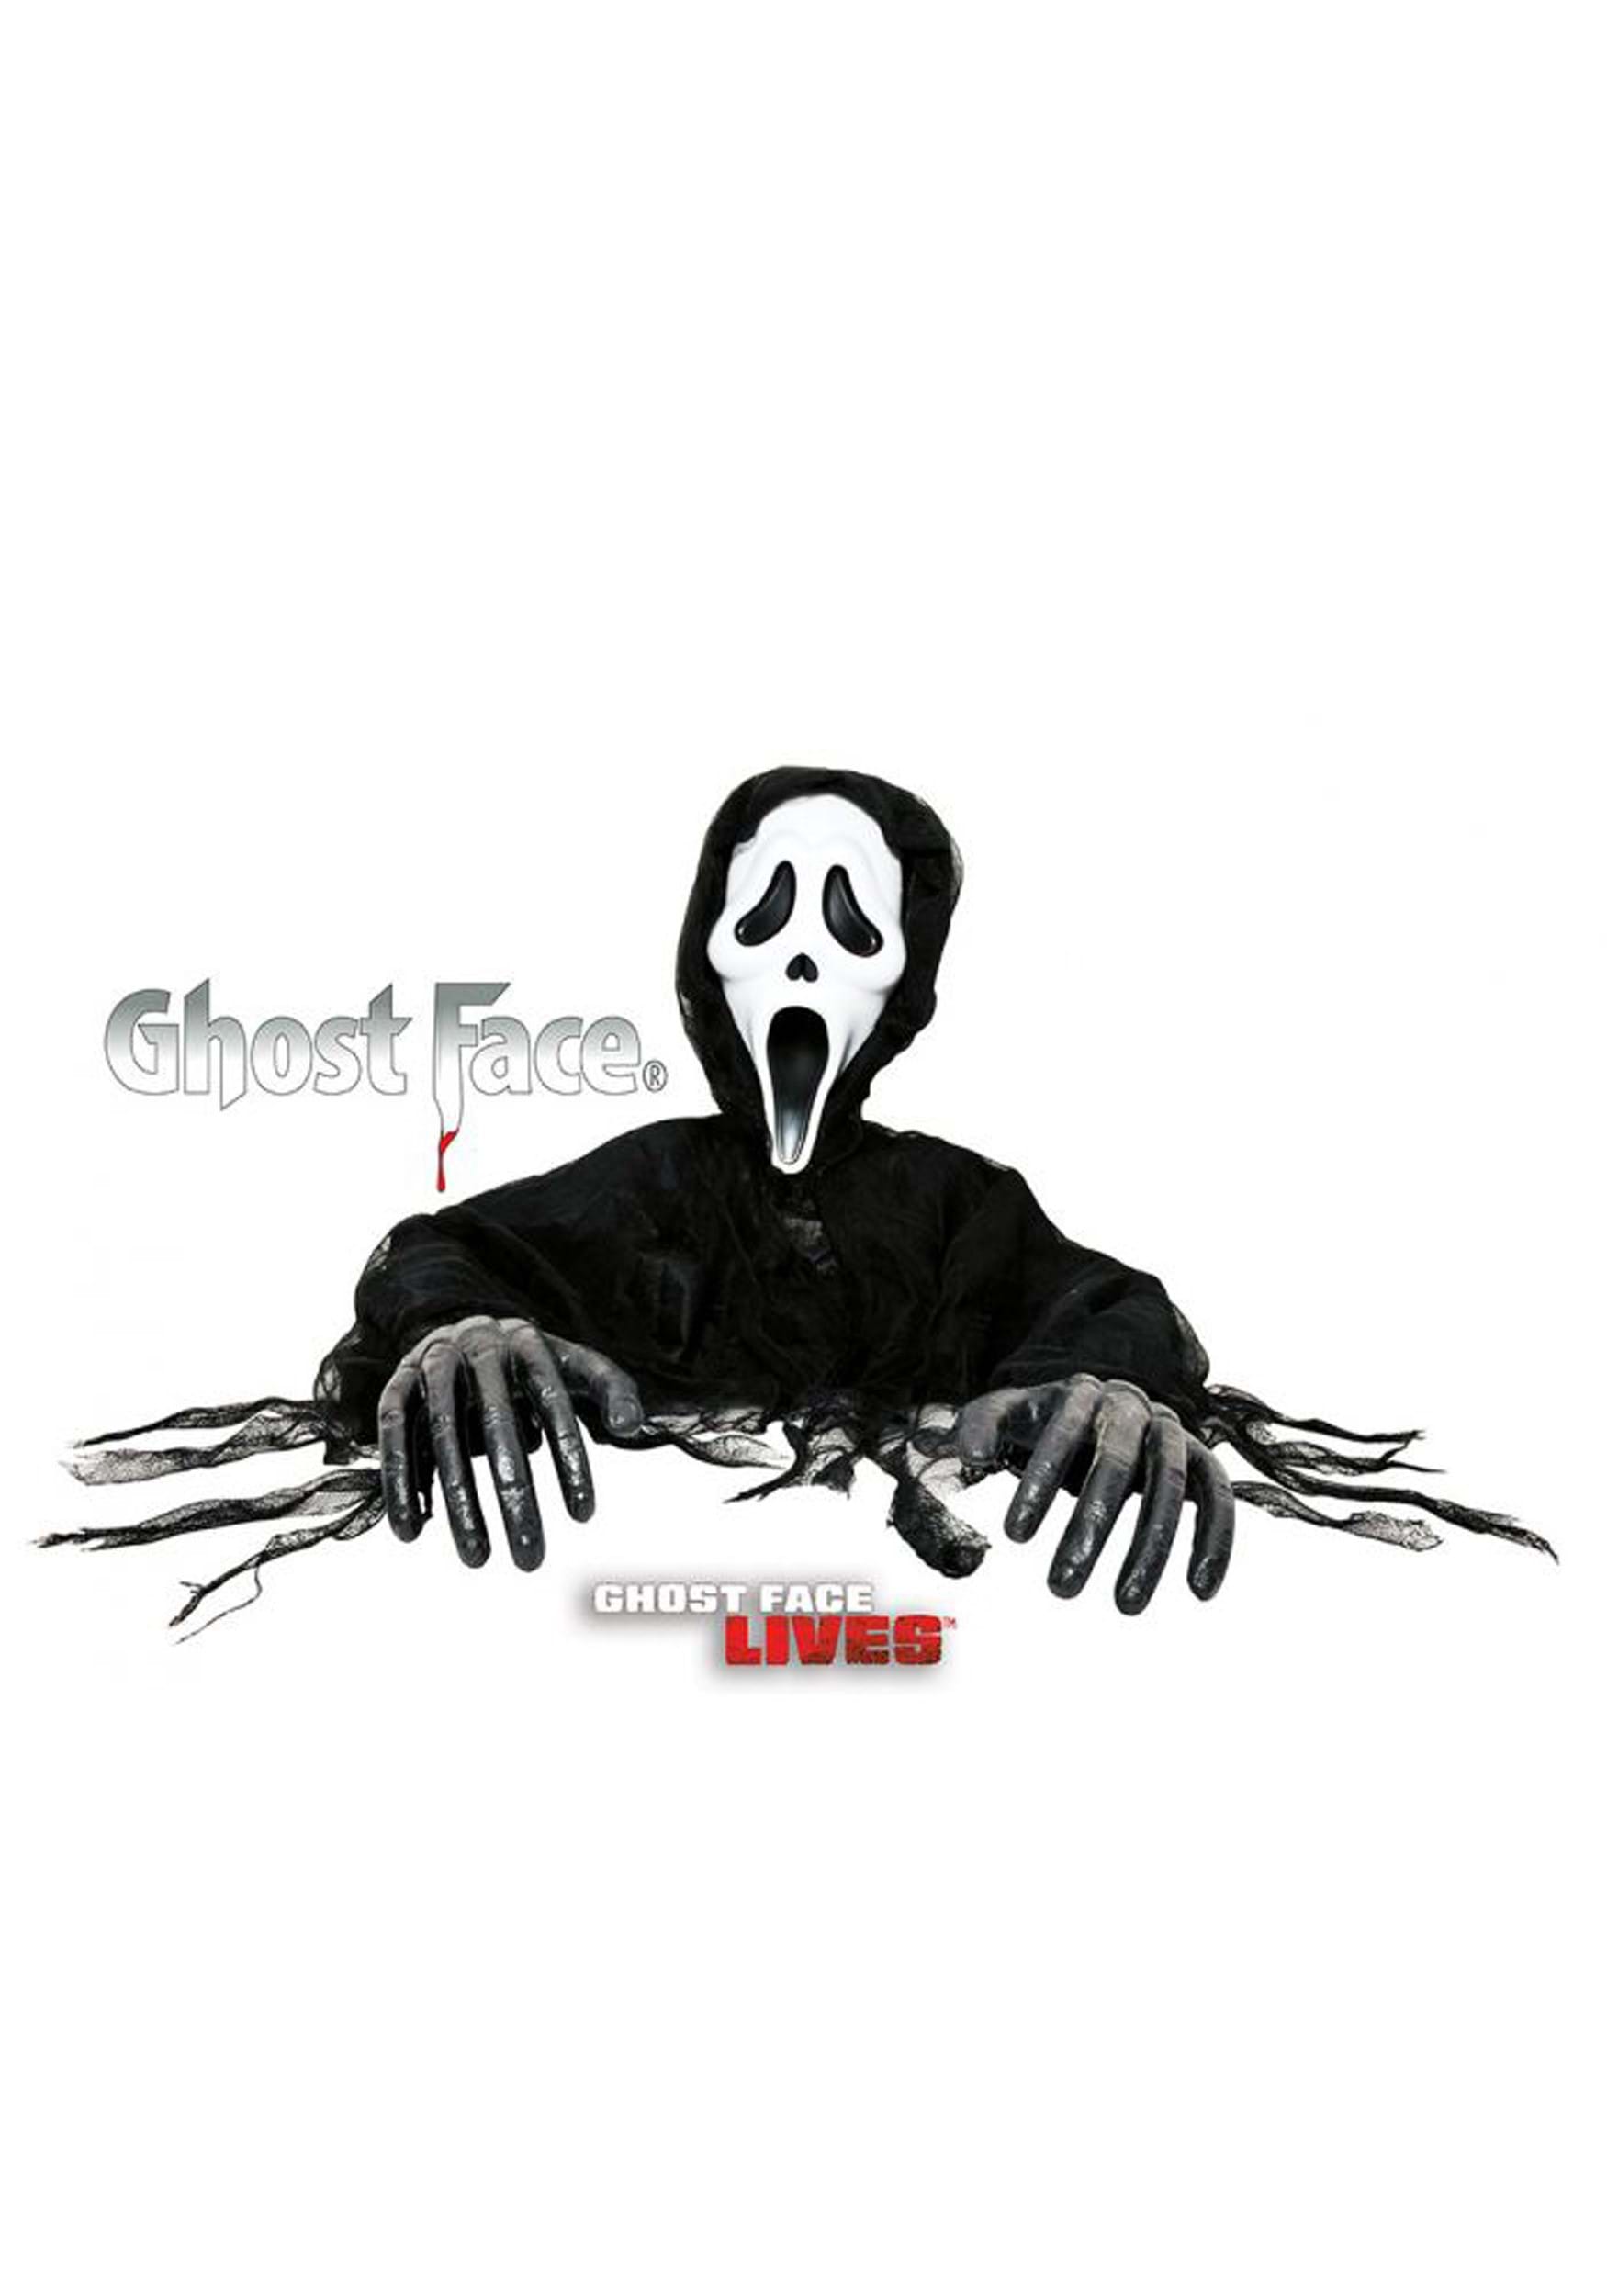 Scream VI: Ghostface Gets Killer Anime Makeover in New Promo